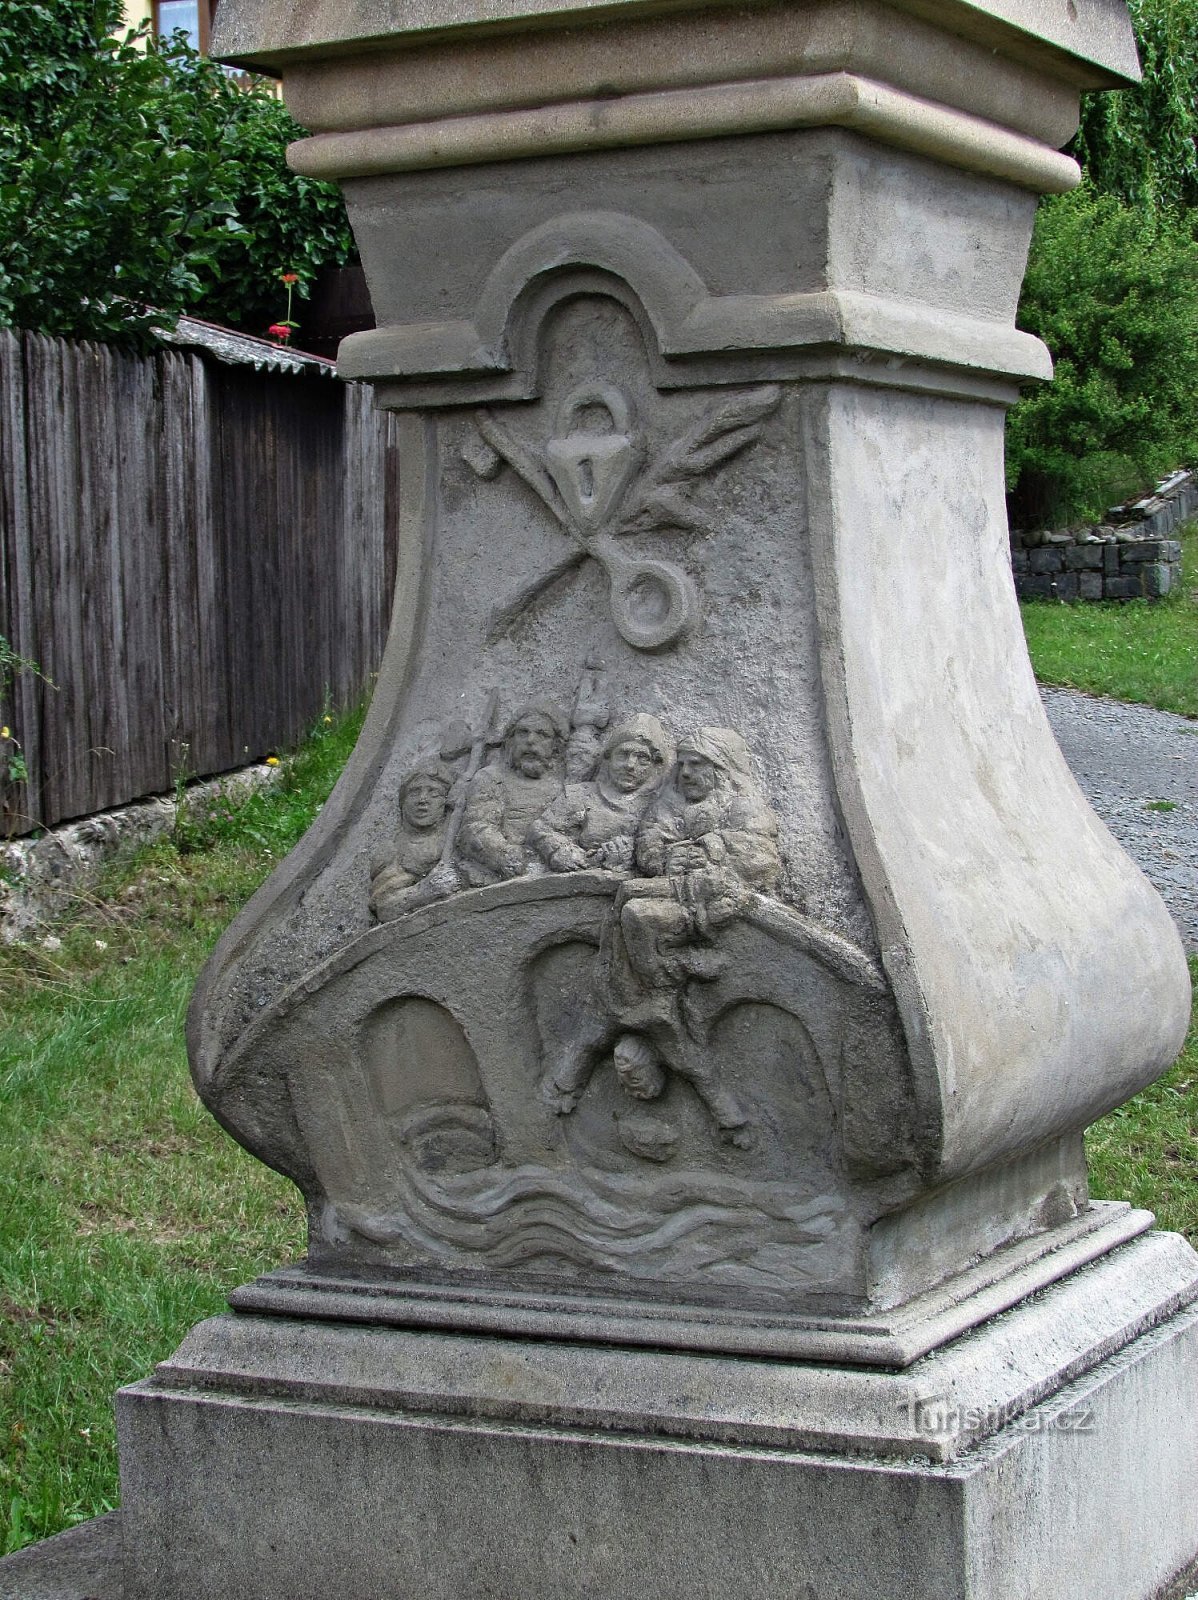 Týn nad Bečvou - άγαλμα του Αγίου Ιωάννη του Nepomuk